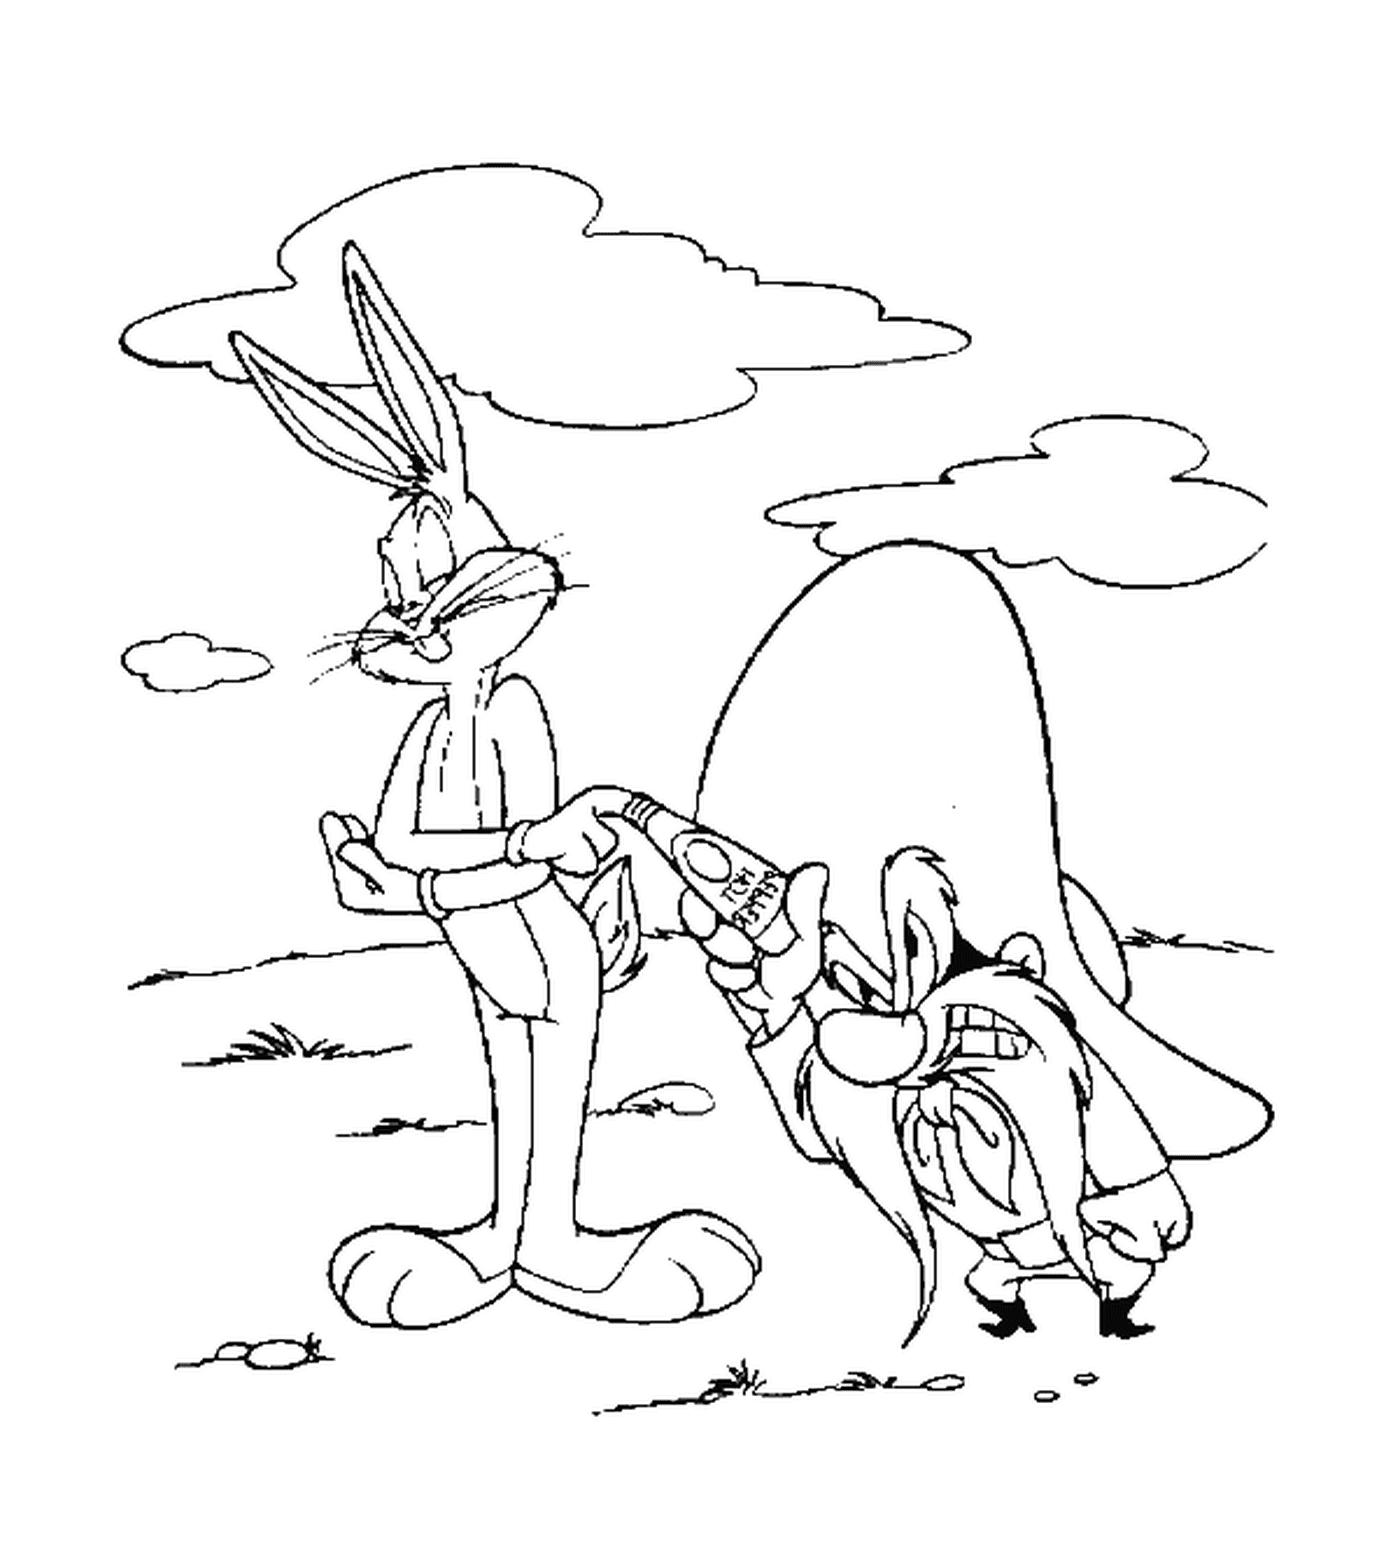  Sam der Pirat und Bugs Bunny 